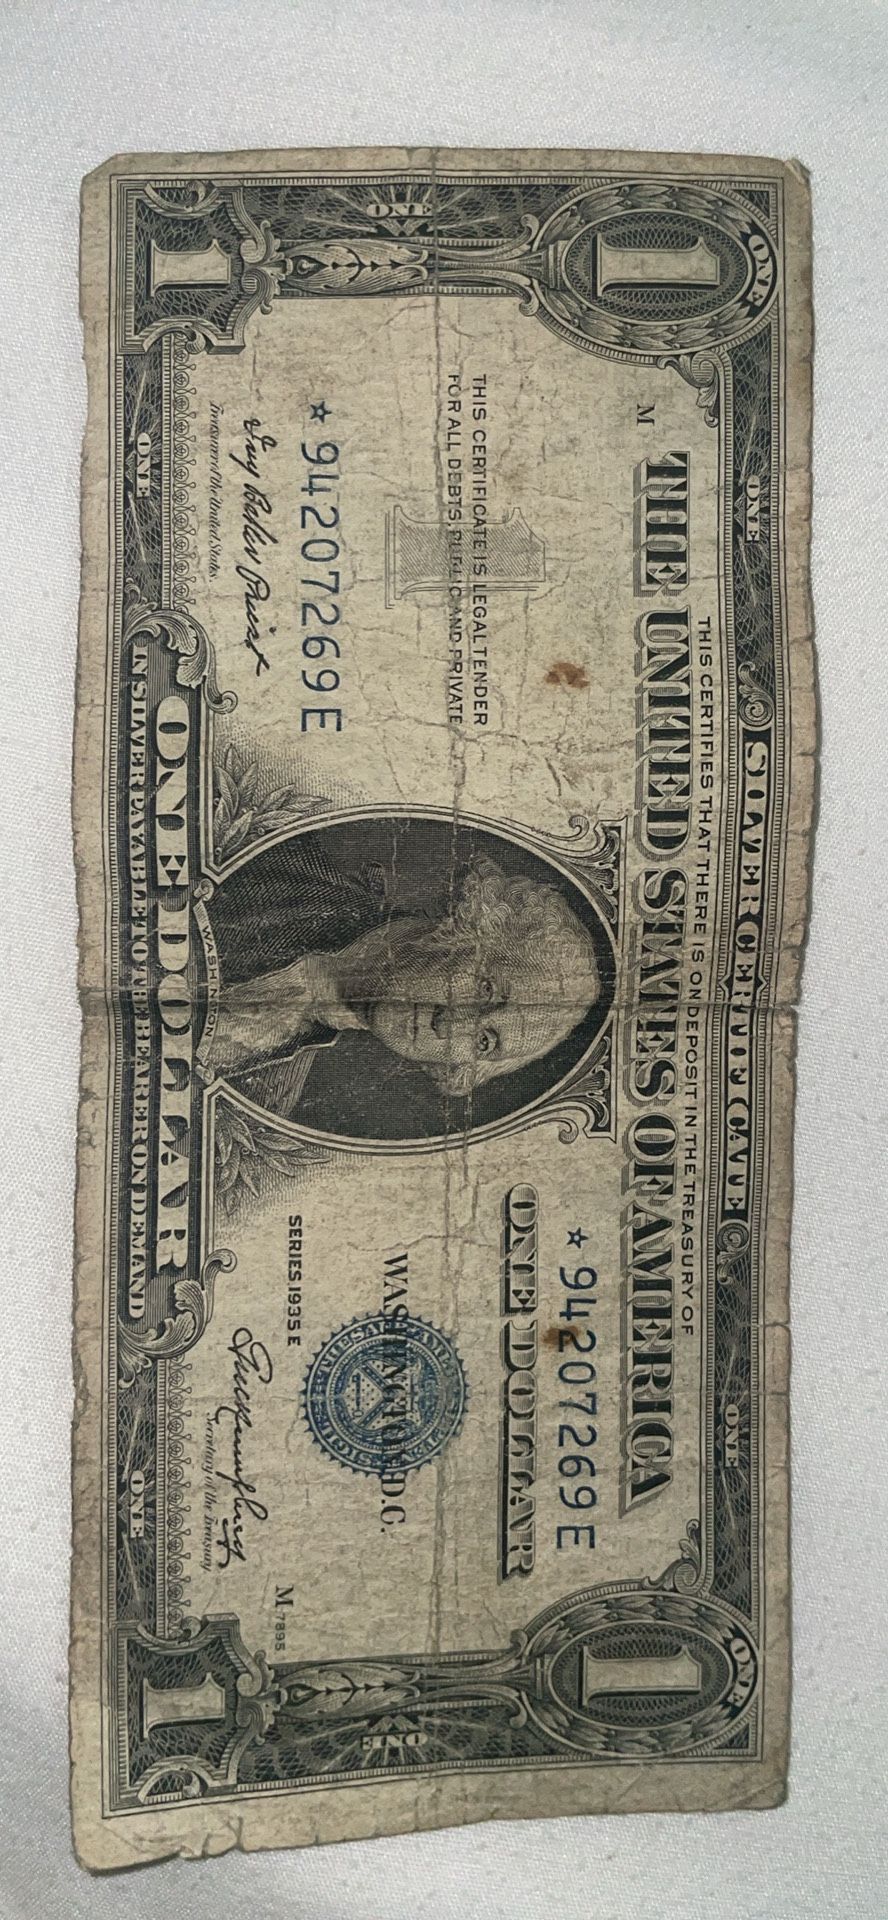 Silver Certificates, Error Dollar bill